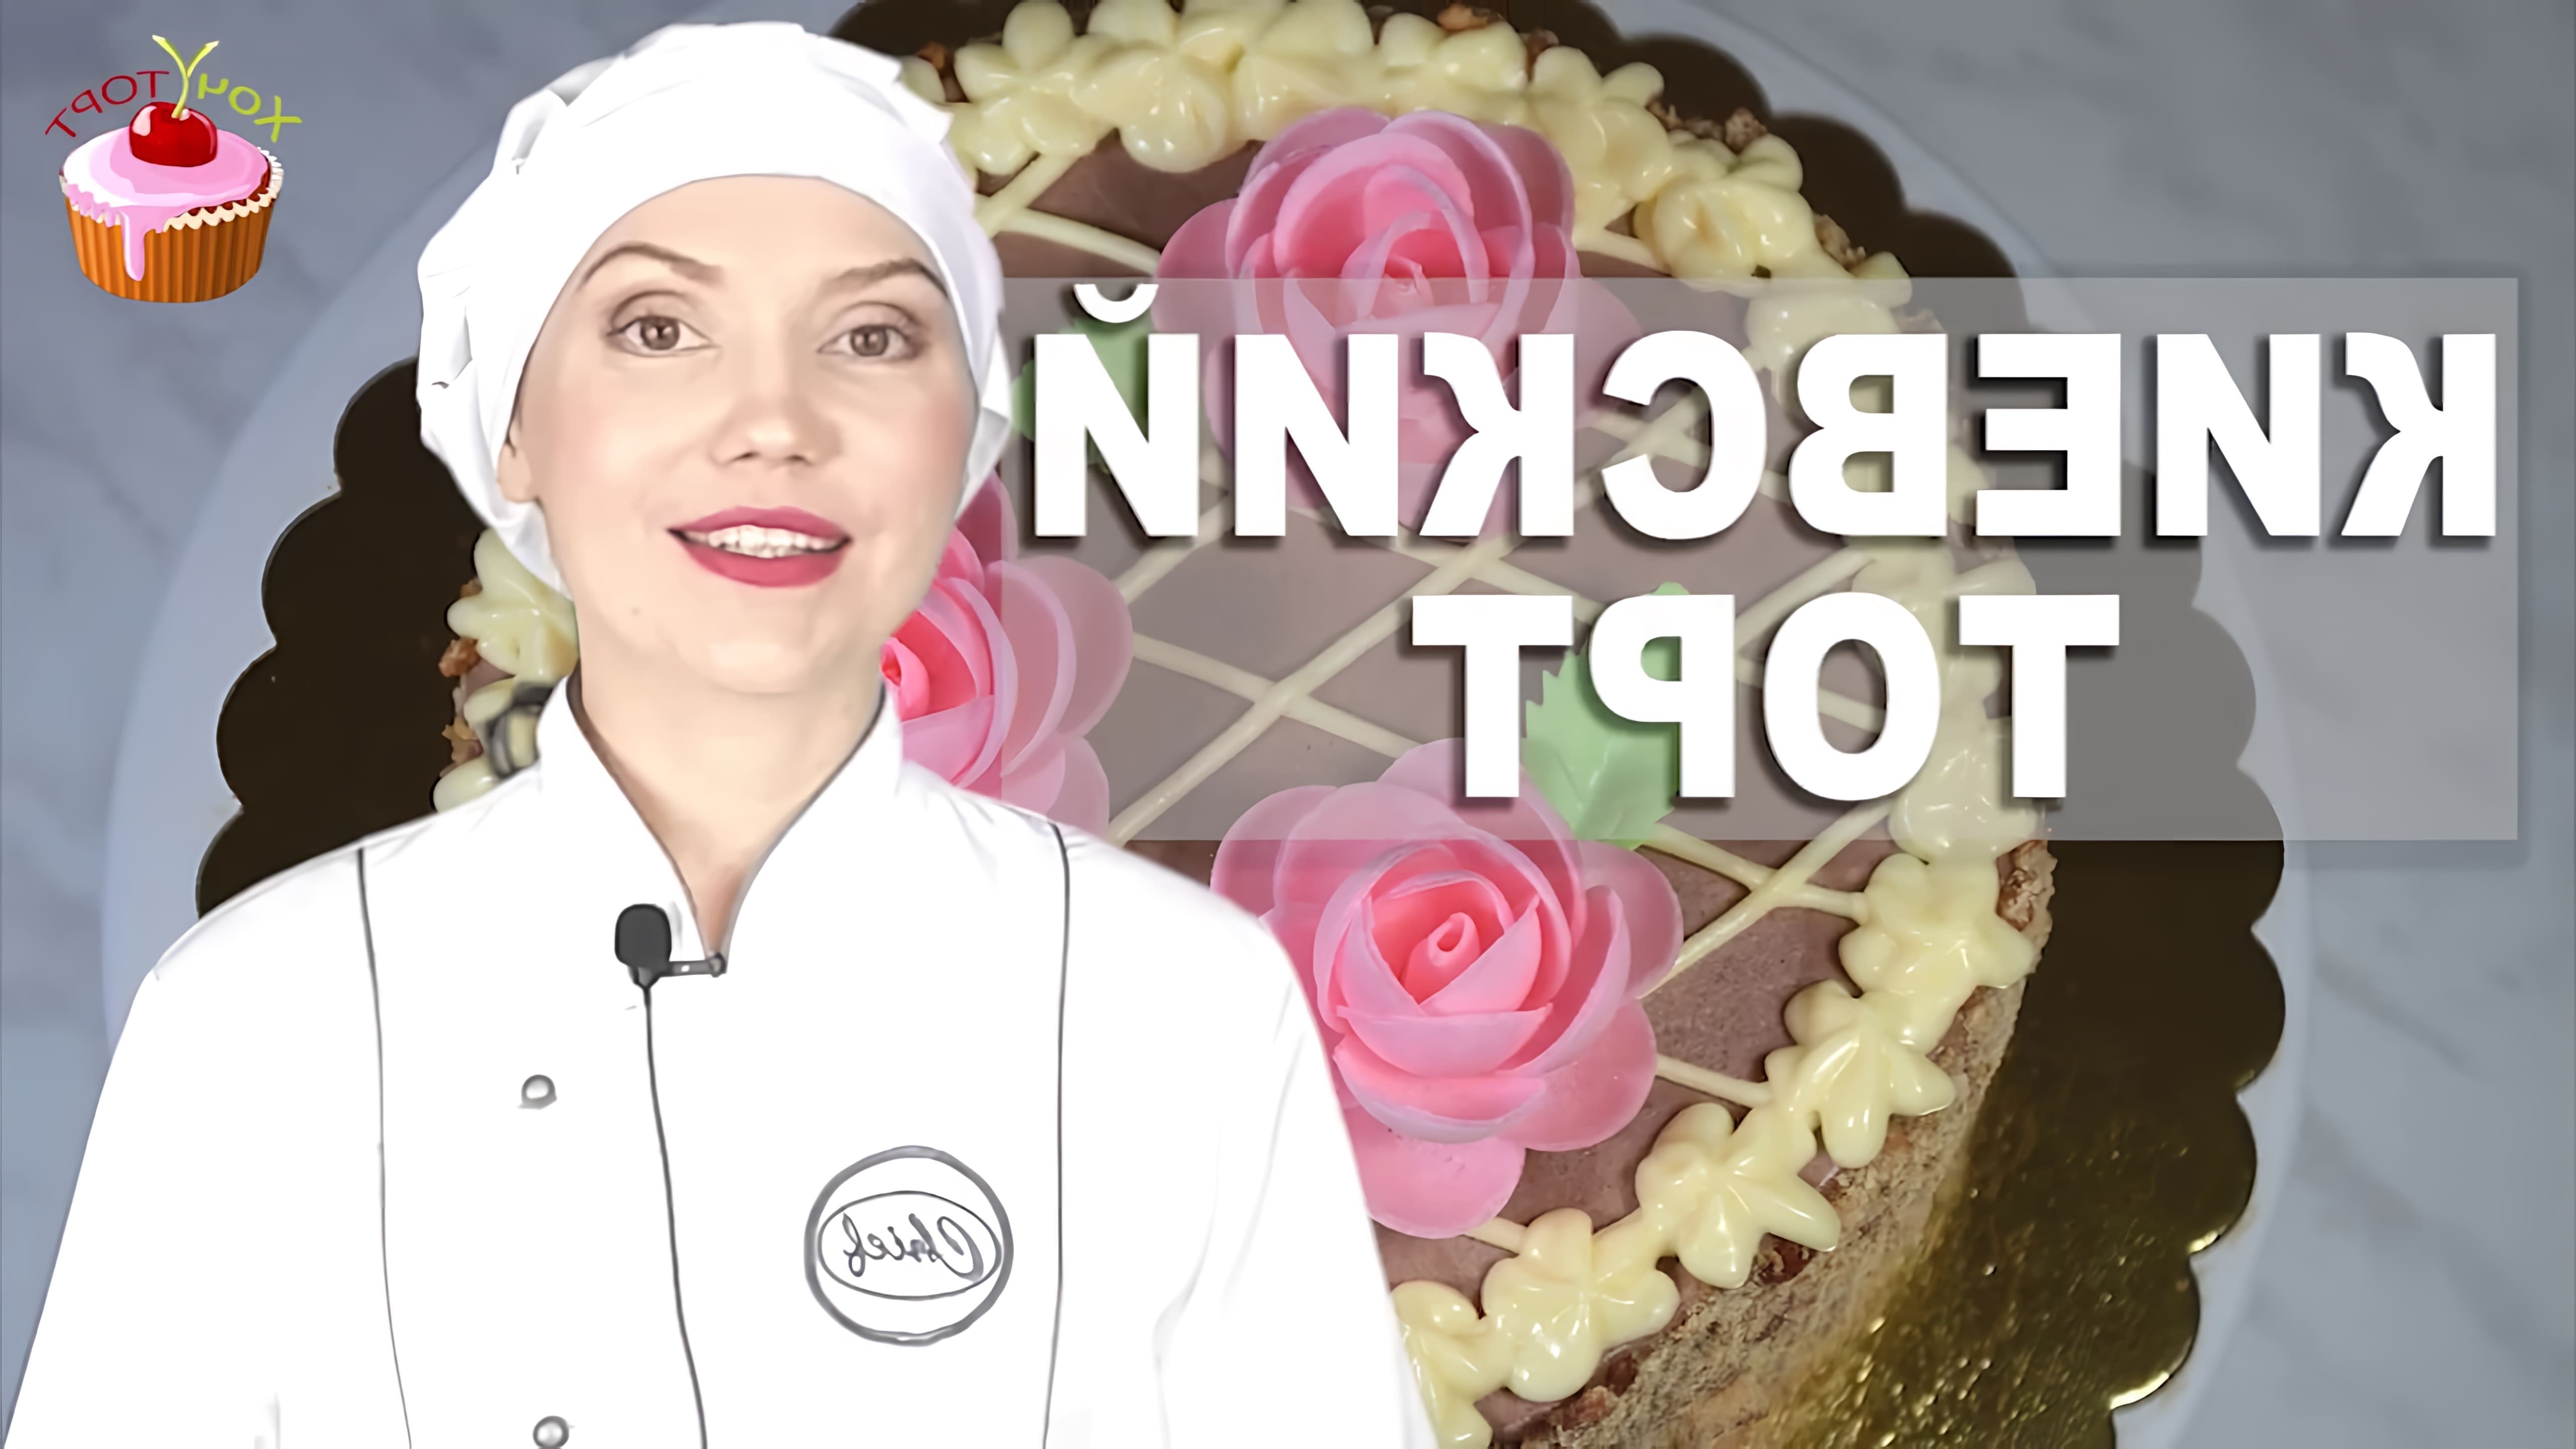 Видео как приготовить традиционный киевский торт, знаменитый десерт советской эпохи, состоящий из ореховых бисквитных слоев, наполненных и покрытых кремом